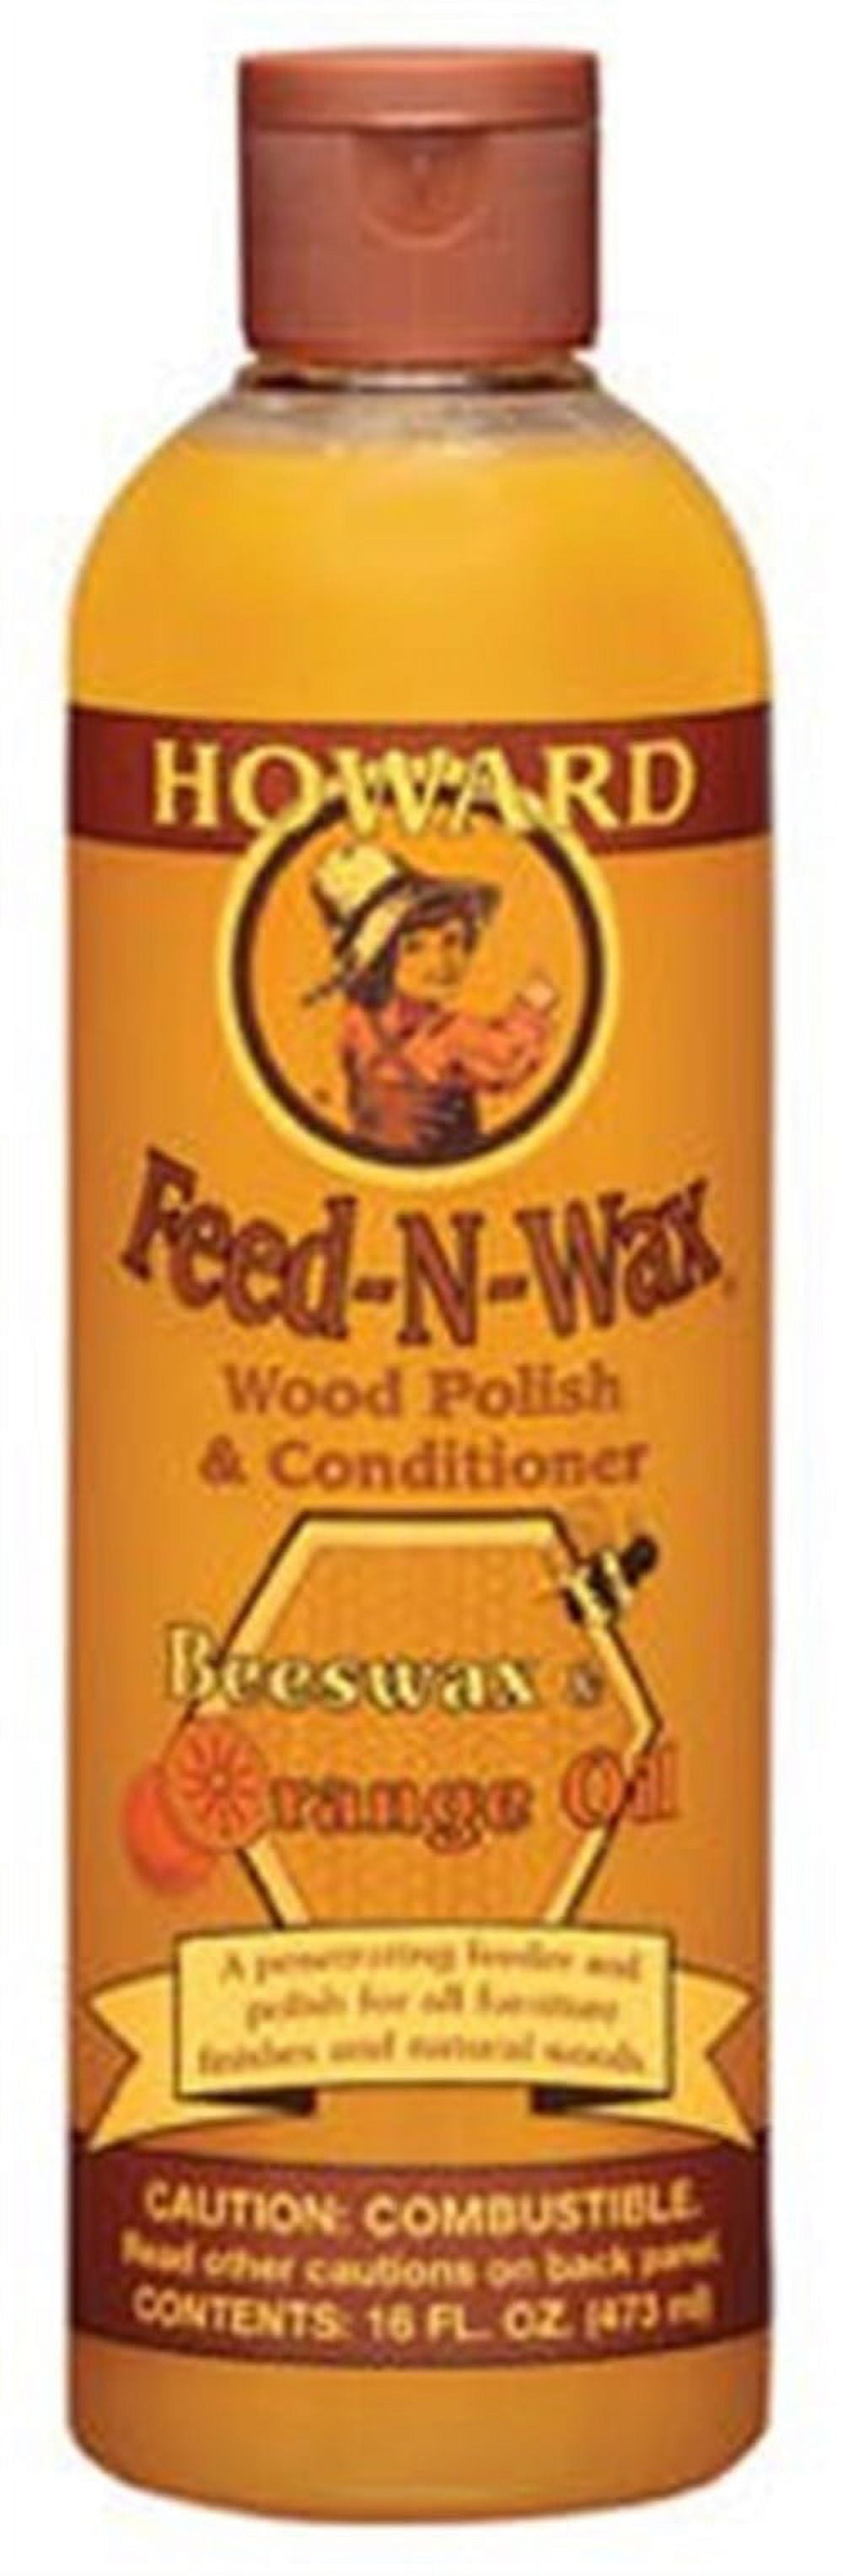 3 Howard FEED N WAX Wood Polish & Conditioner Clear Beeswax & Orange Oil 16  oz